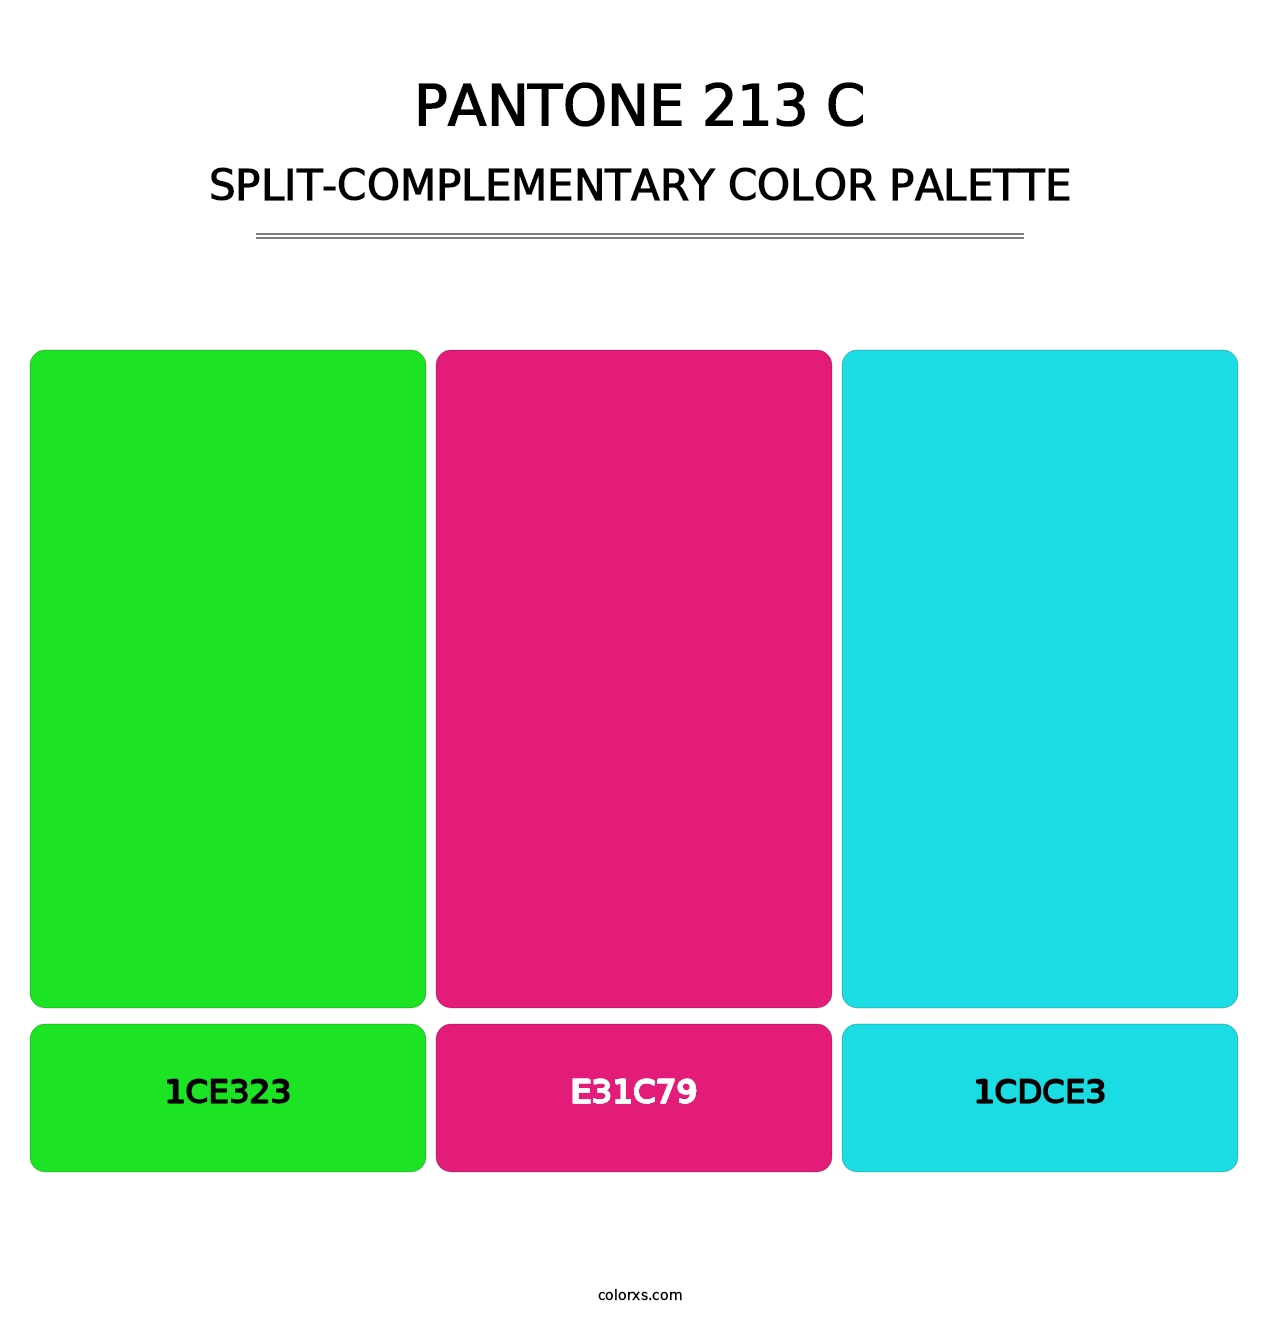 PANTONE 213 C - Split-Complementary Color Palette